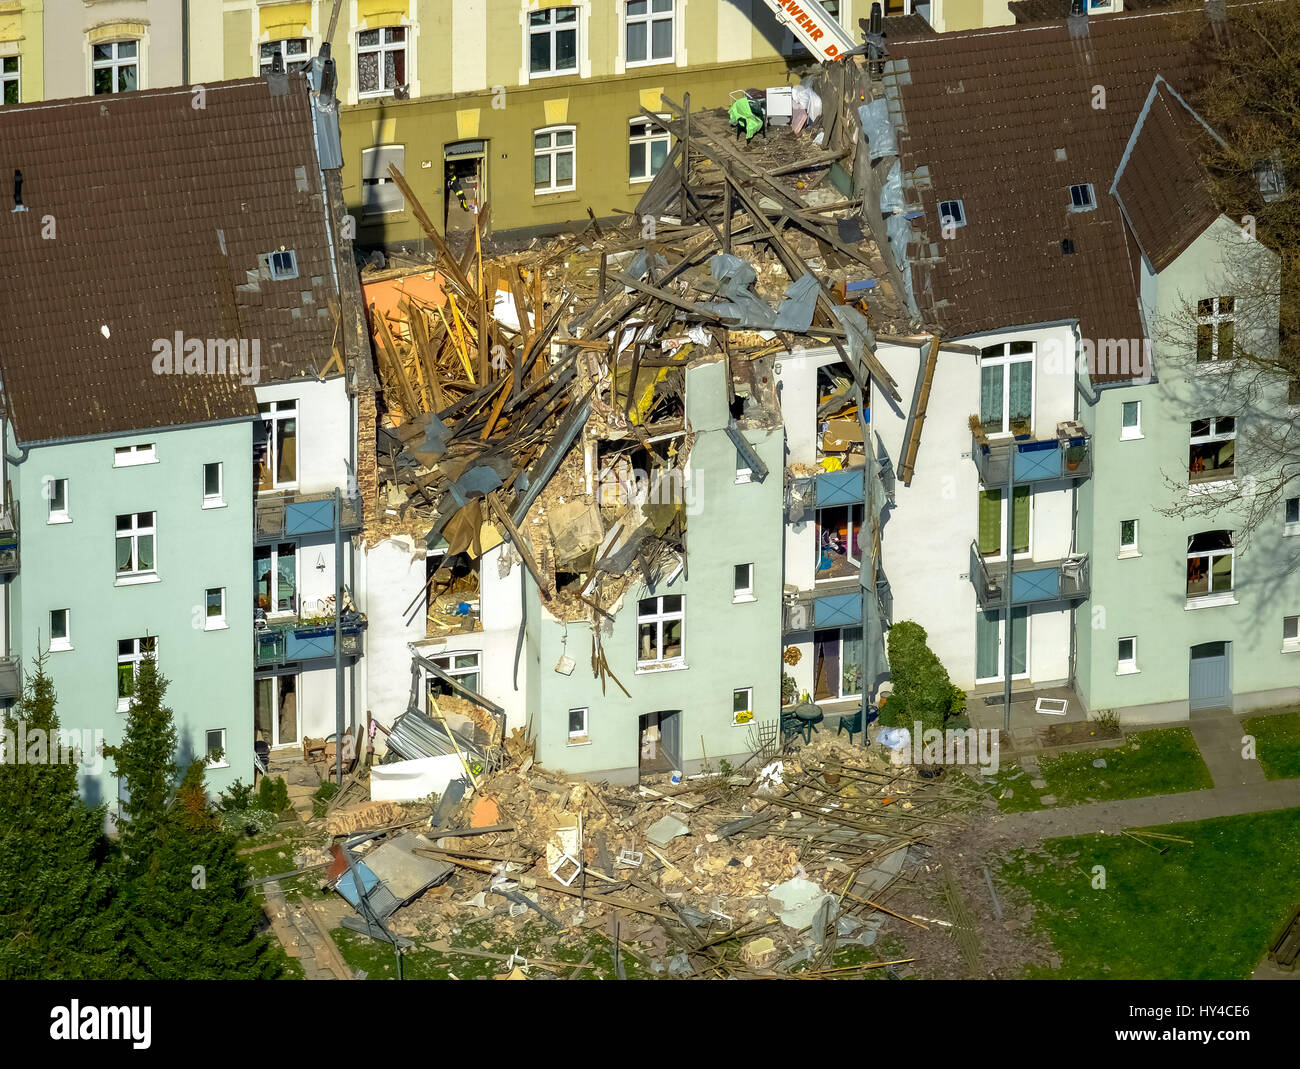 Edificio residencial en Dortmund explotó, Dortmund - Horda, explosión en un edificio residencial de tres pisos, Teutonenstrasse 3, Dortmund, área de Ruhr, Foto de stock